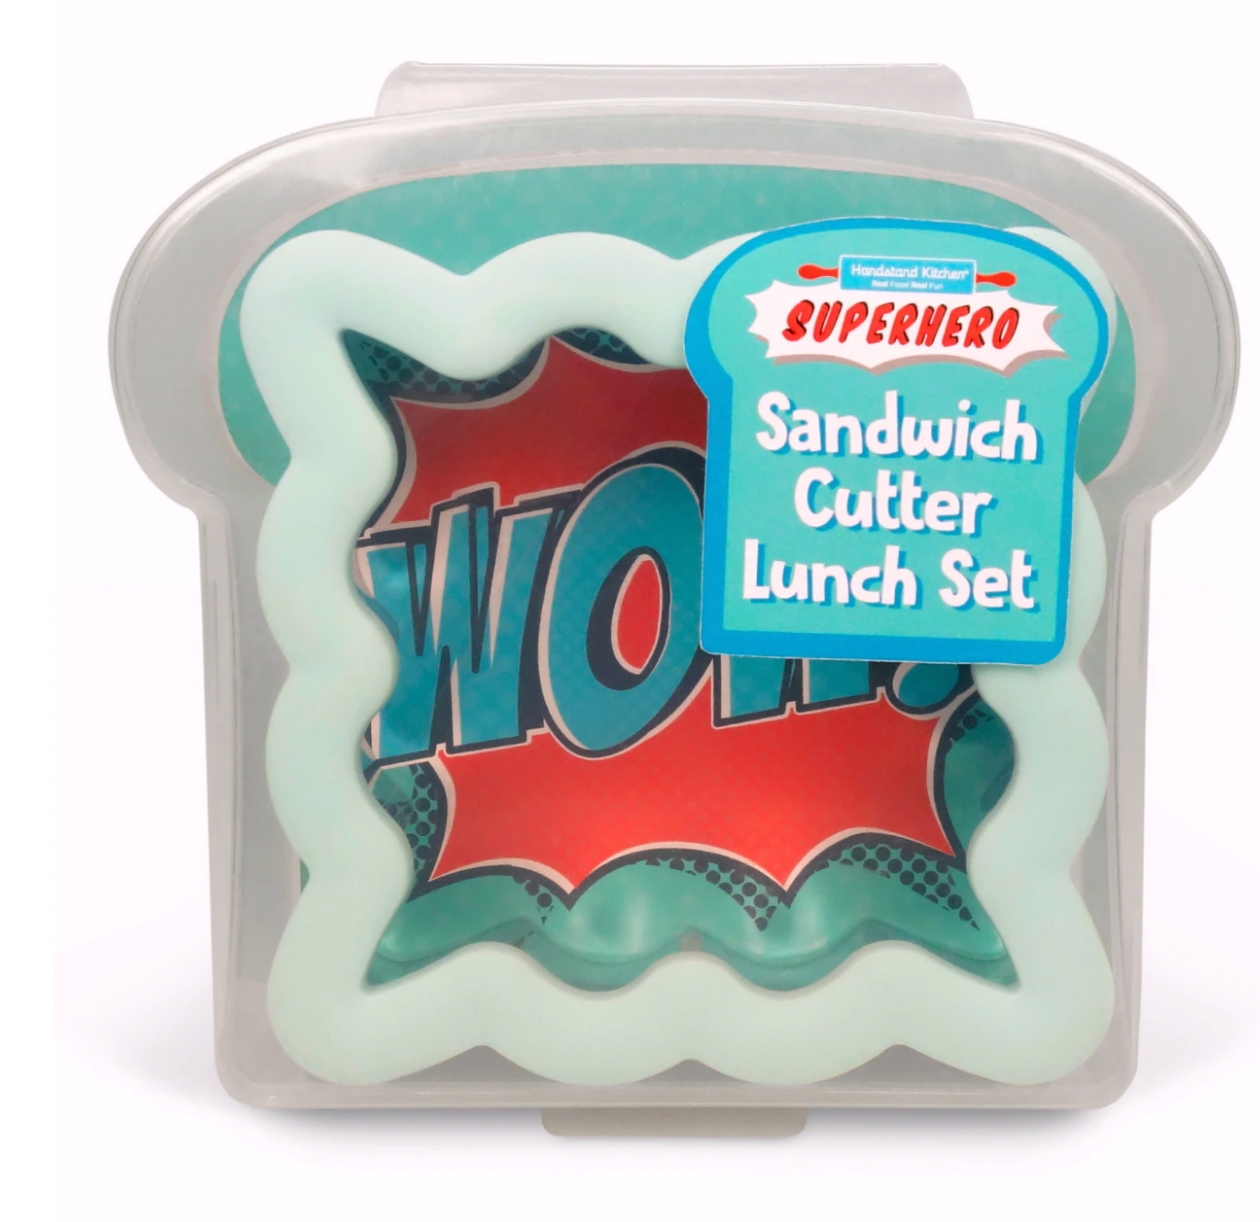 Superhero Sandwich Cutter Lunch Set - Mumzie's Children